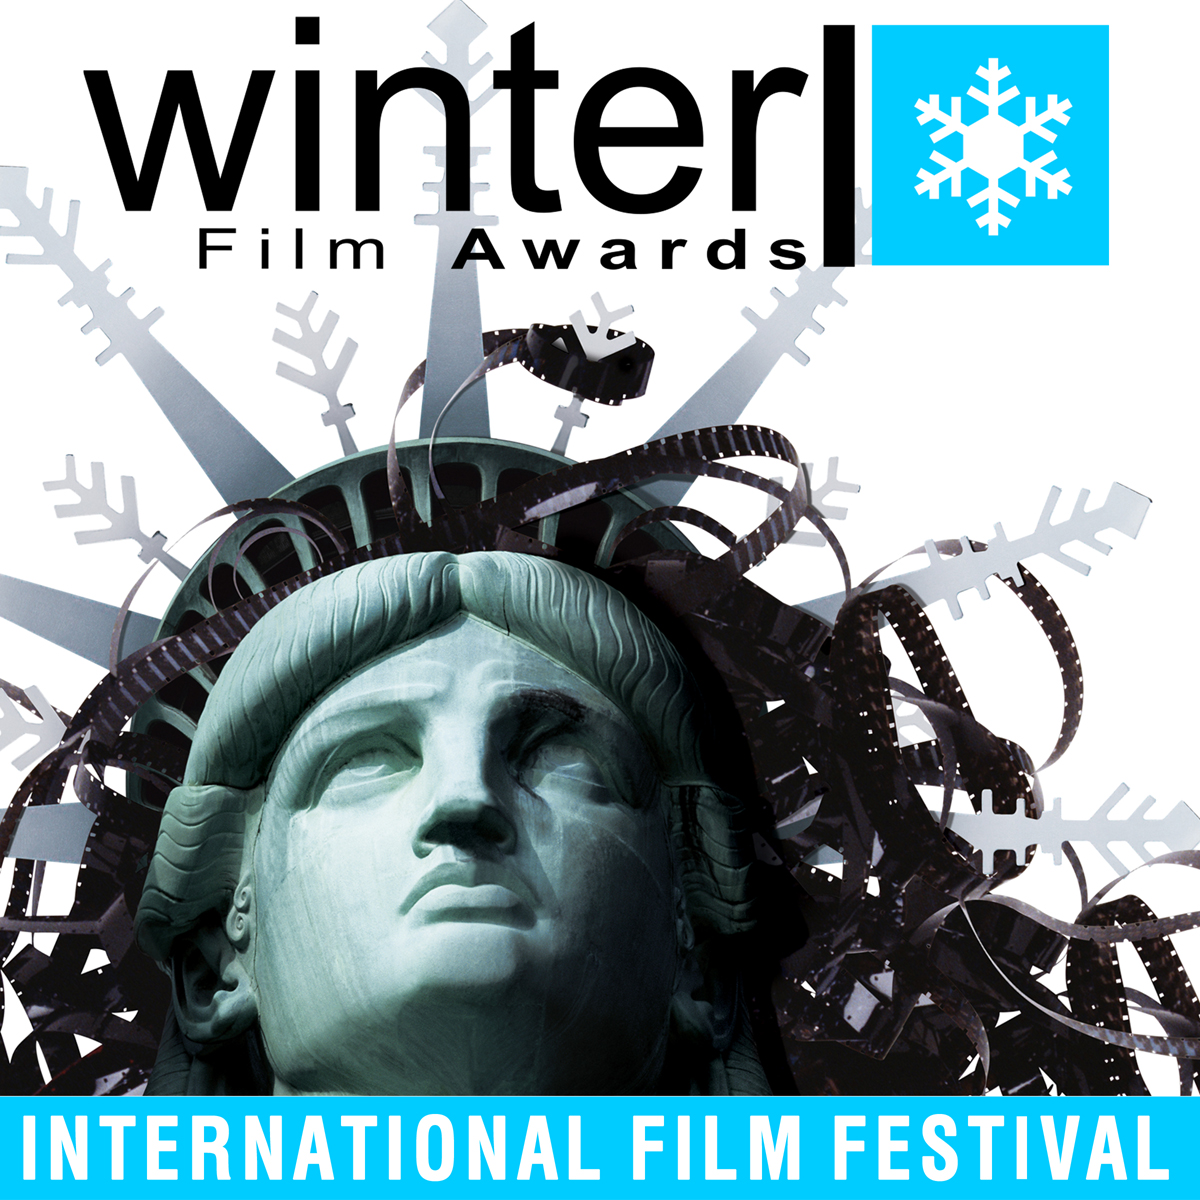 Winter Film Awards